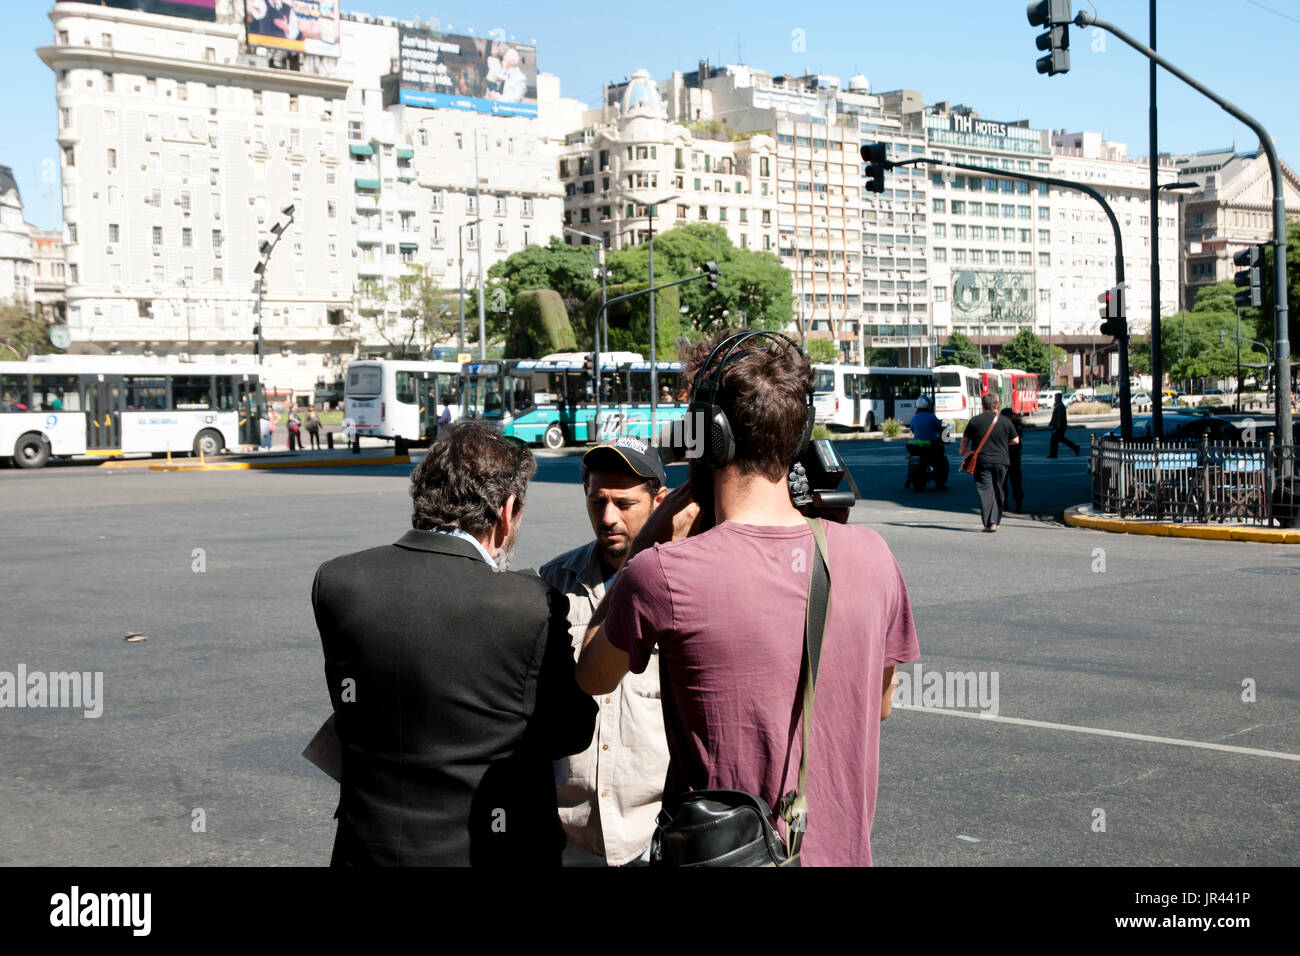 BUENOS AIRES, Argentina - 15 dicembre 2016: TV News equipaggio intervistando un uomo locale durante una manifestazione di protesta per i servizi pubblici Foto Stock